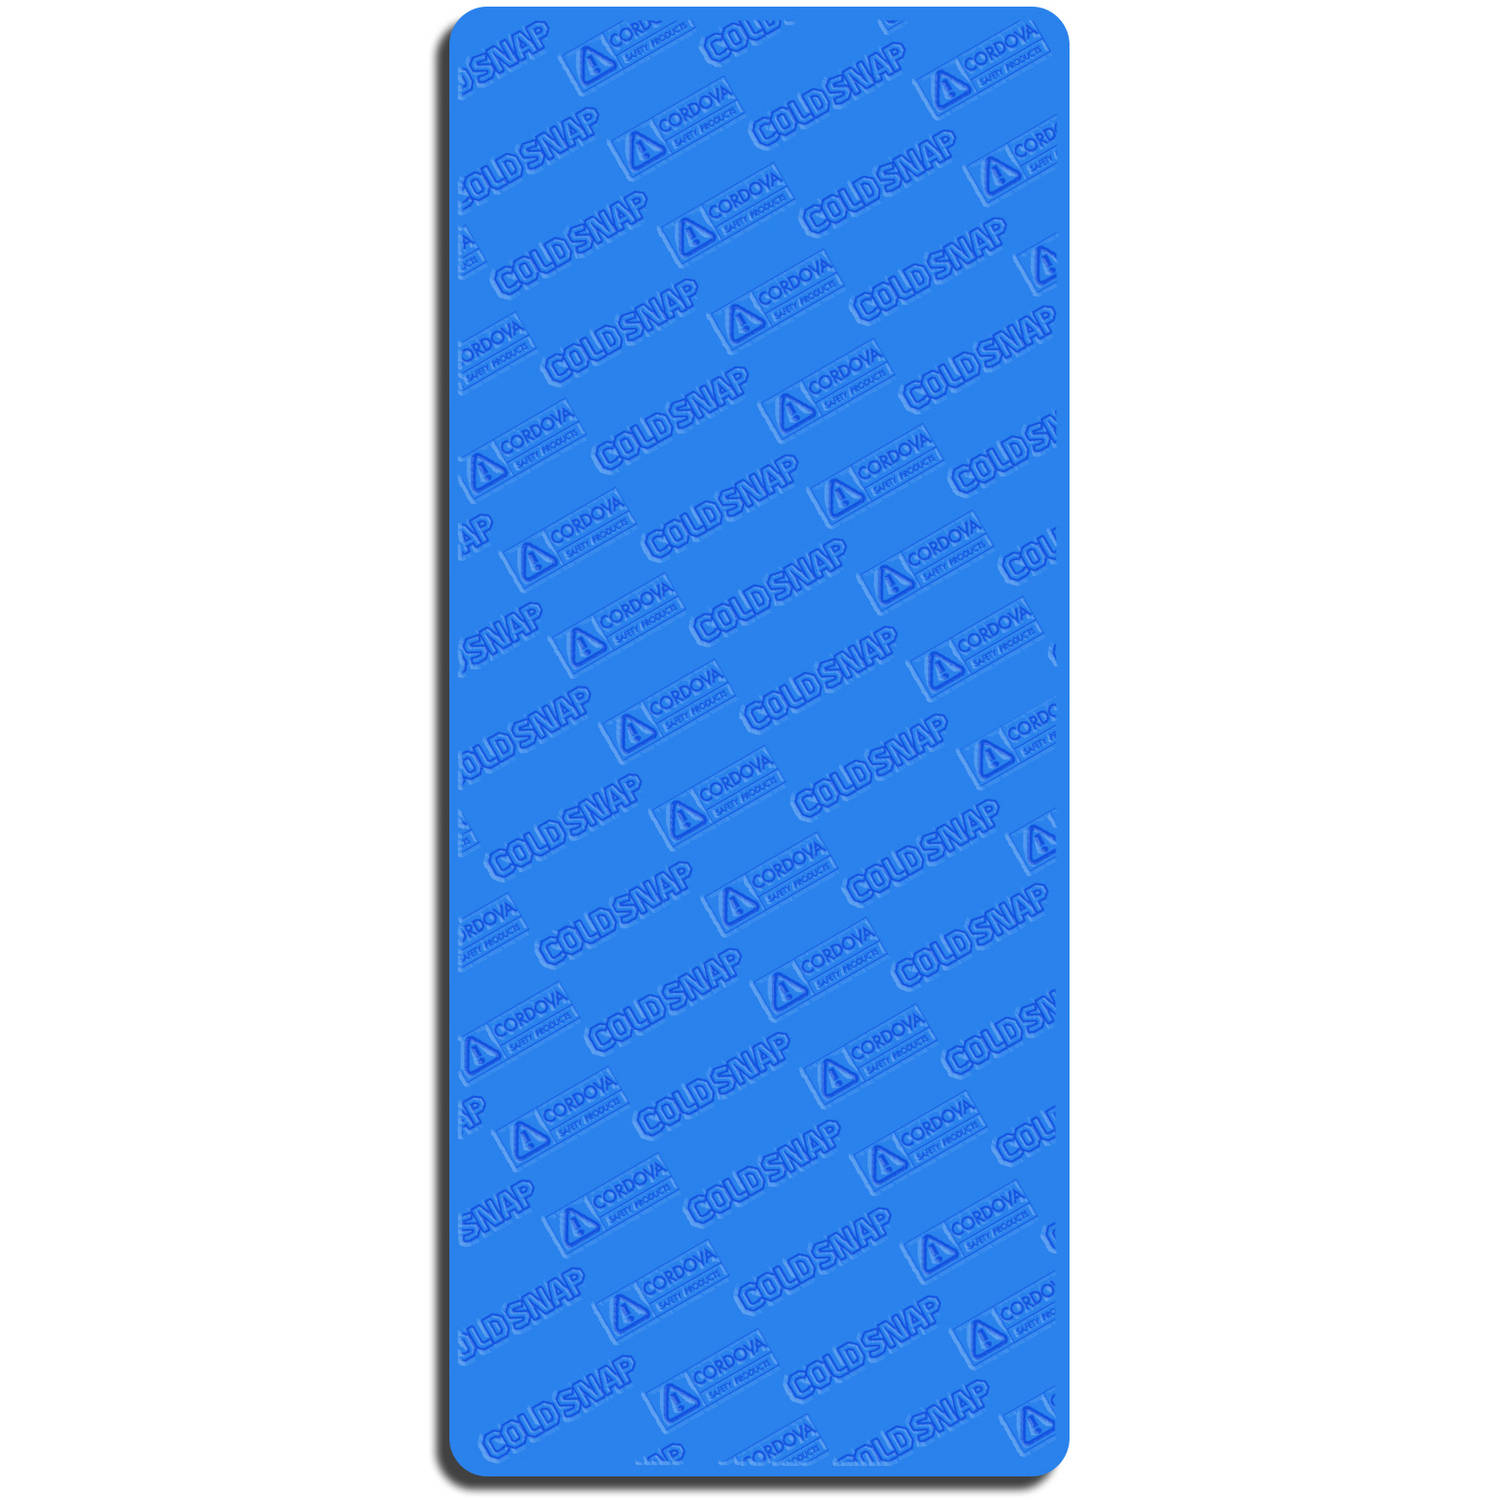 8450円 新品即決 100cm x 30cm Blue - Syourself Cooling Towel for Instant Relief Cool B